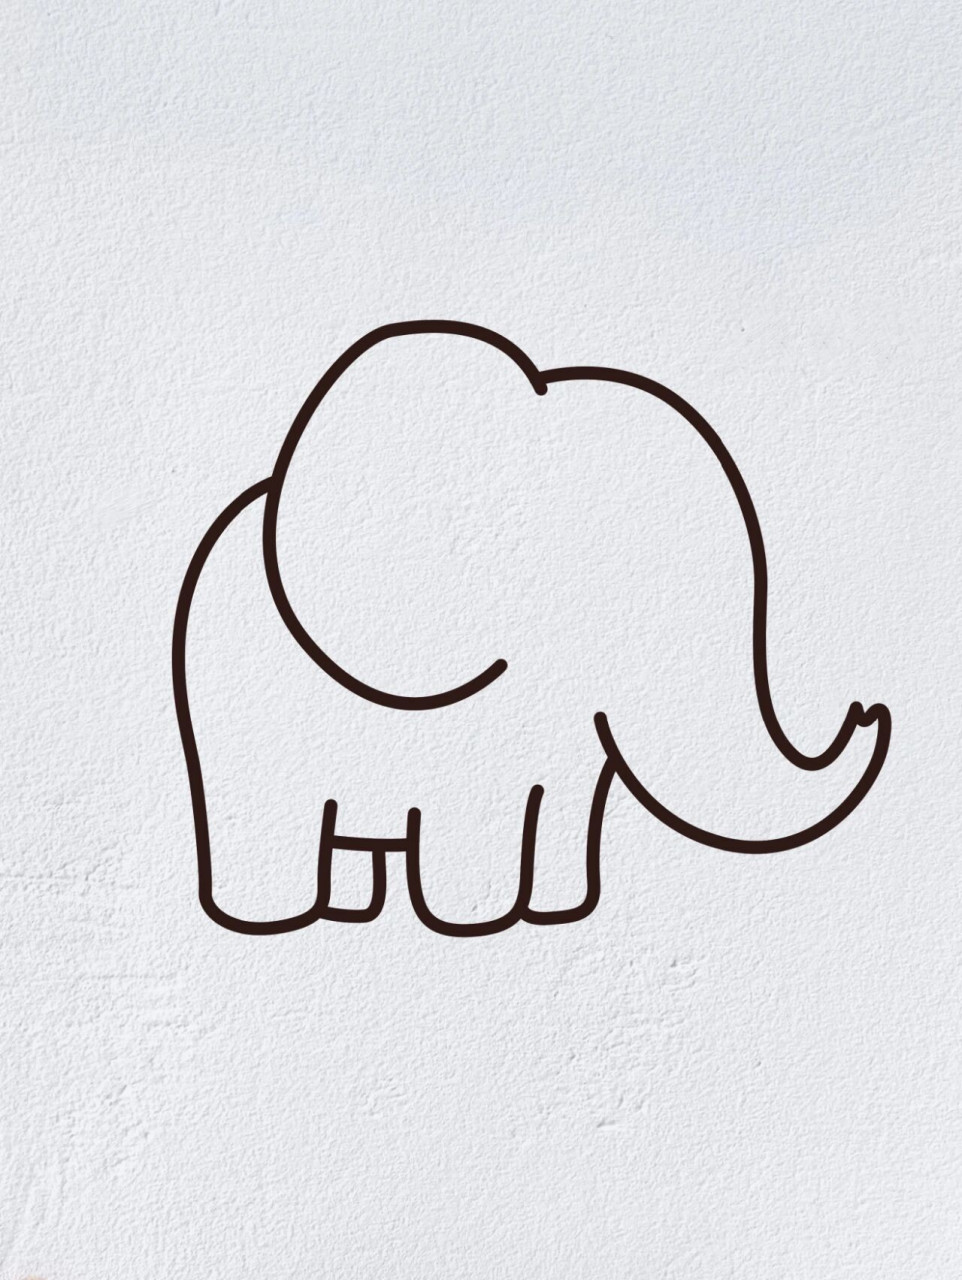 大象搬木头简笔画图片